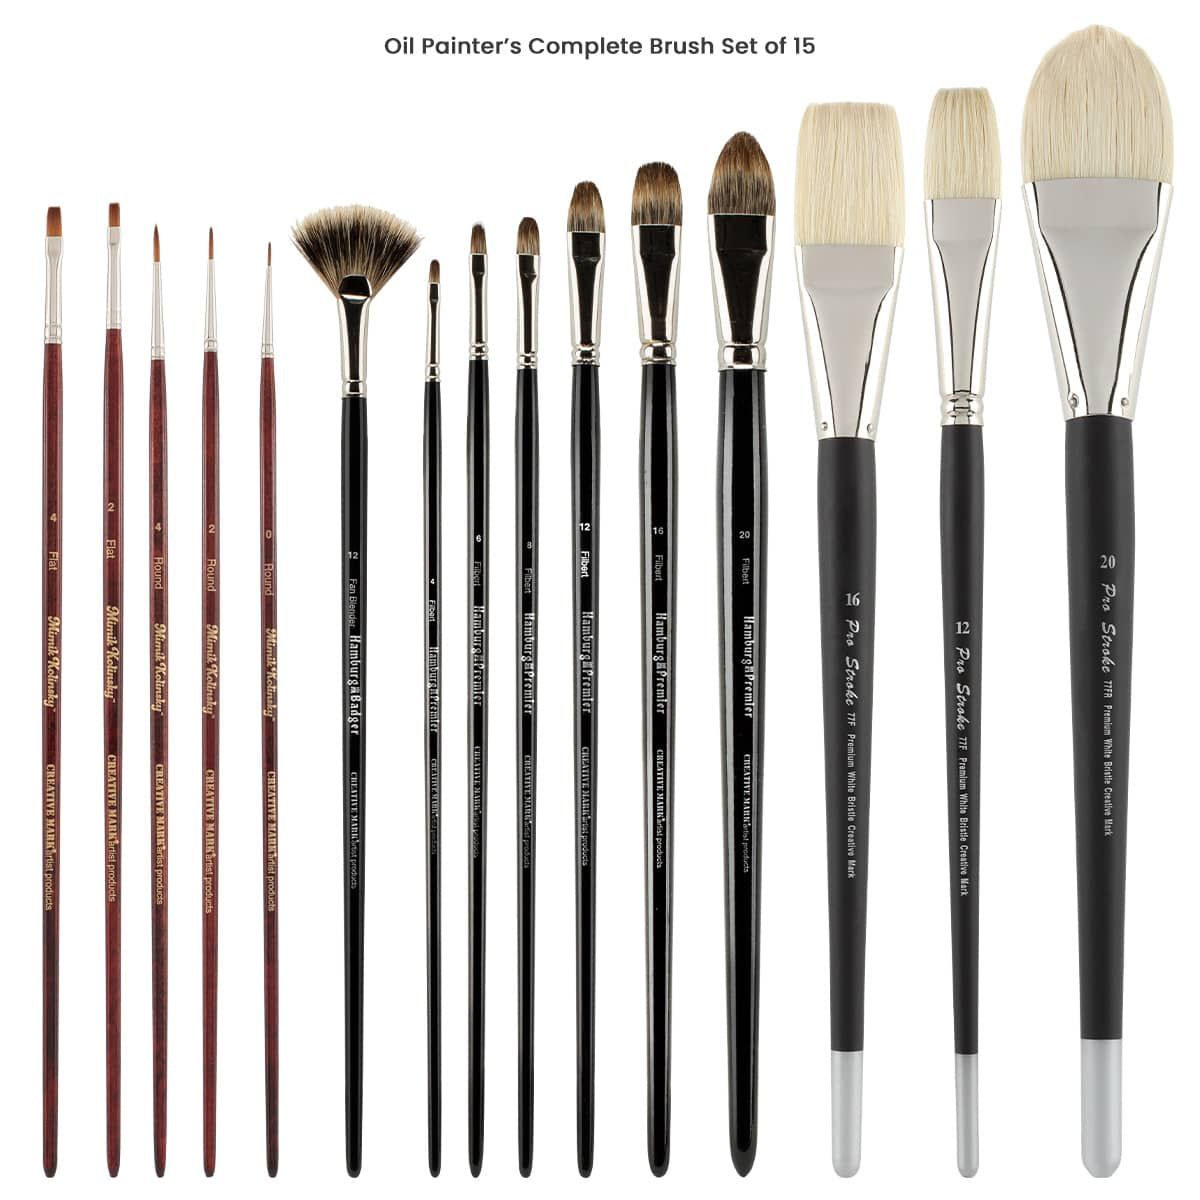 Pro Art Brush White Bristle Set Round 3pc, Paint Brushes, Acrylic